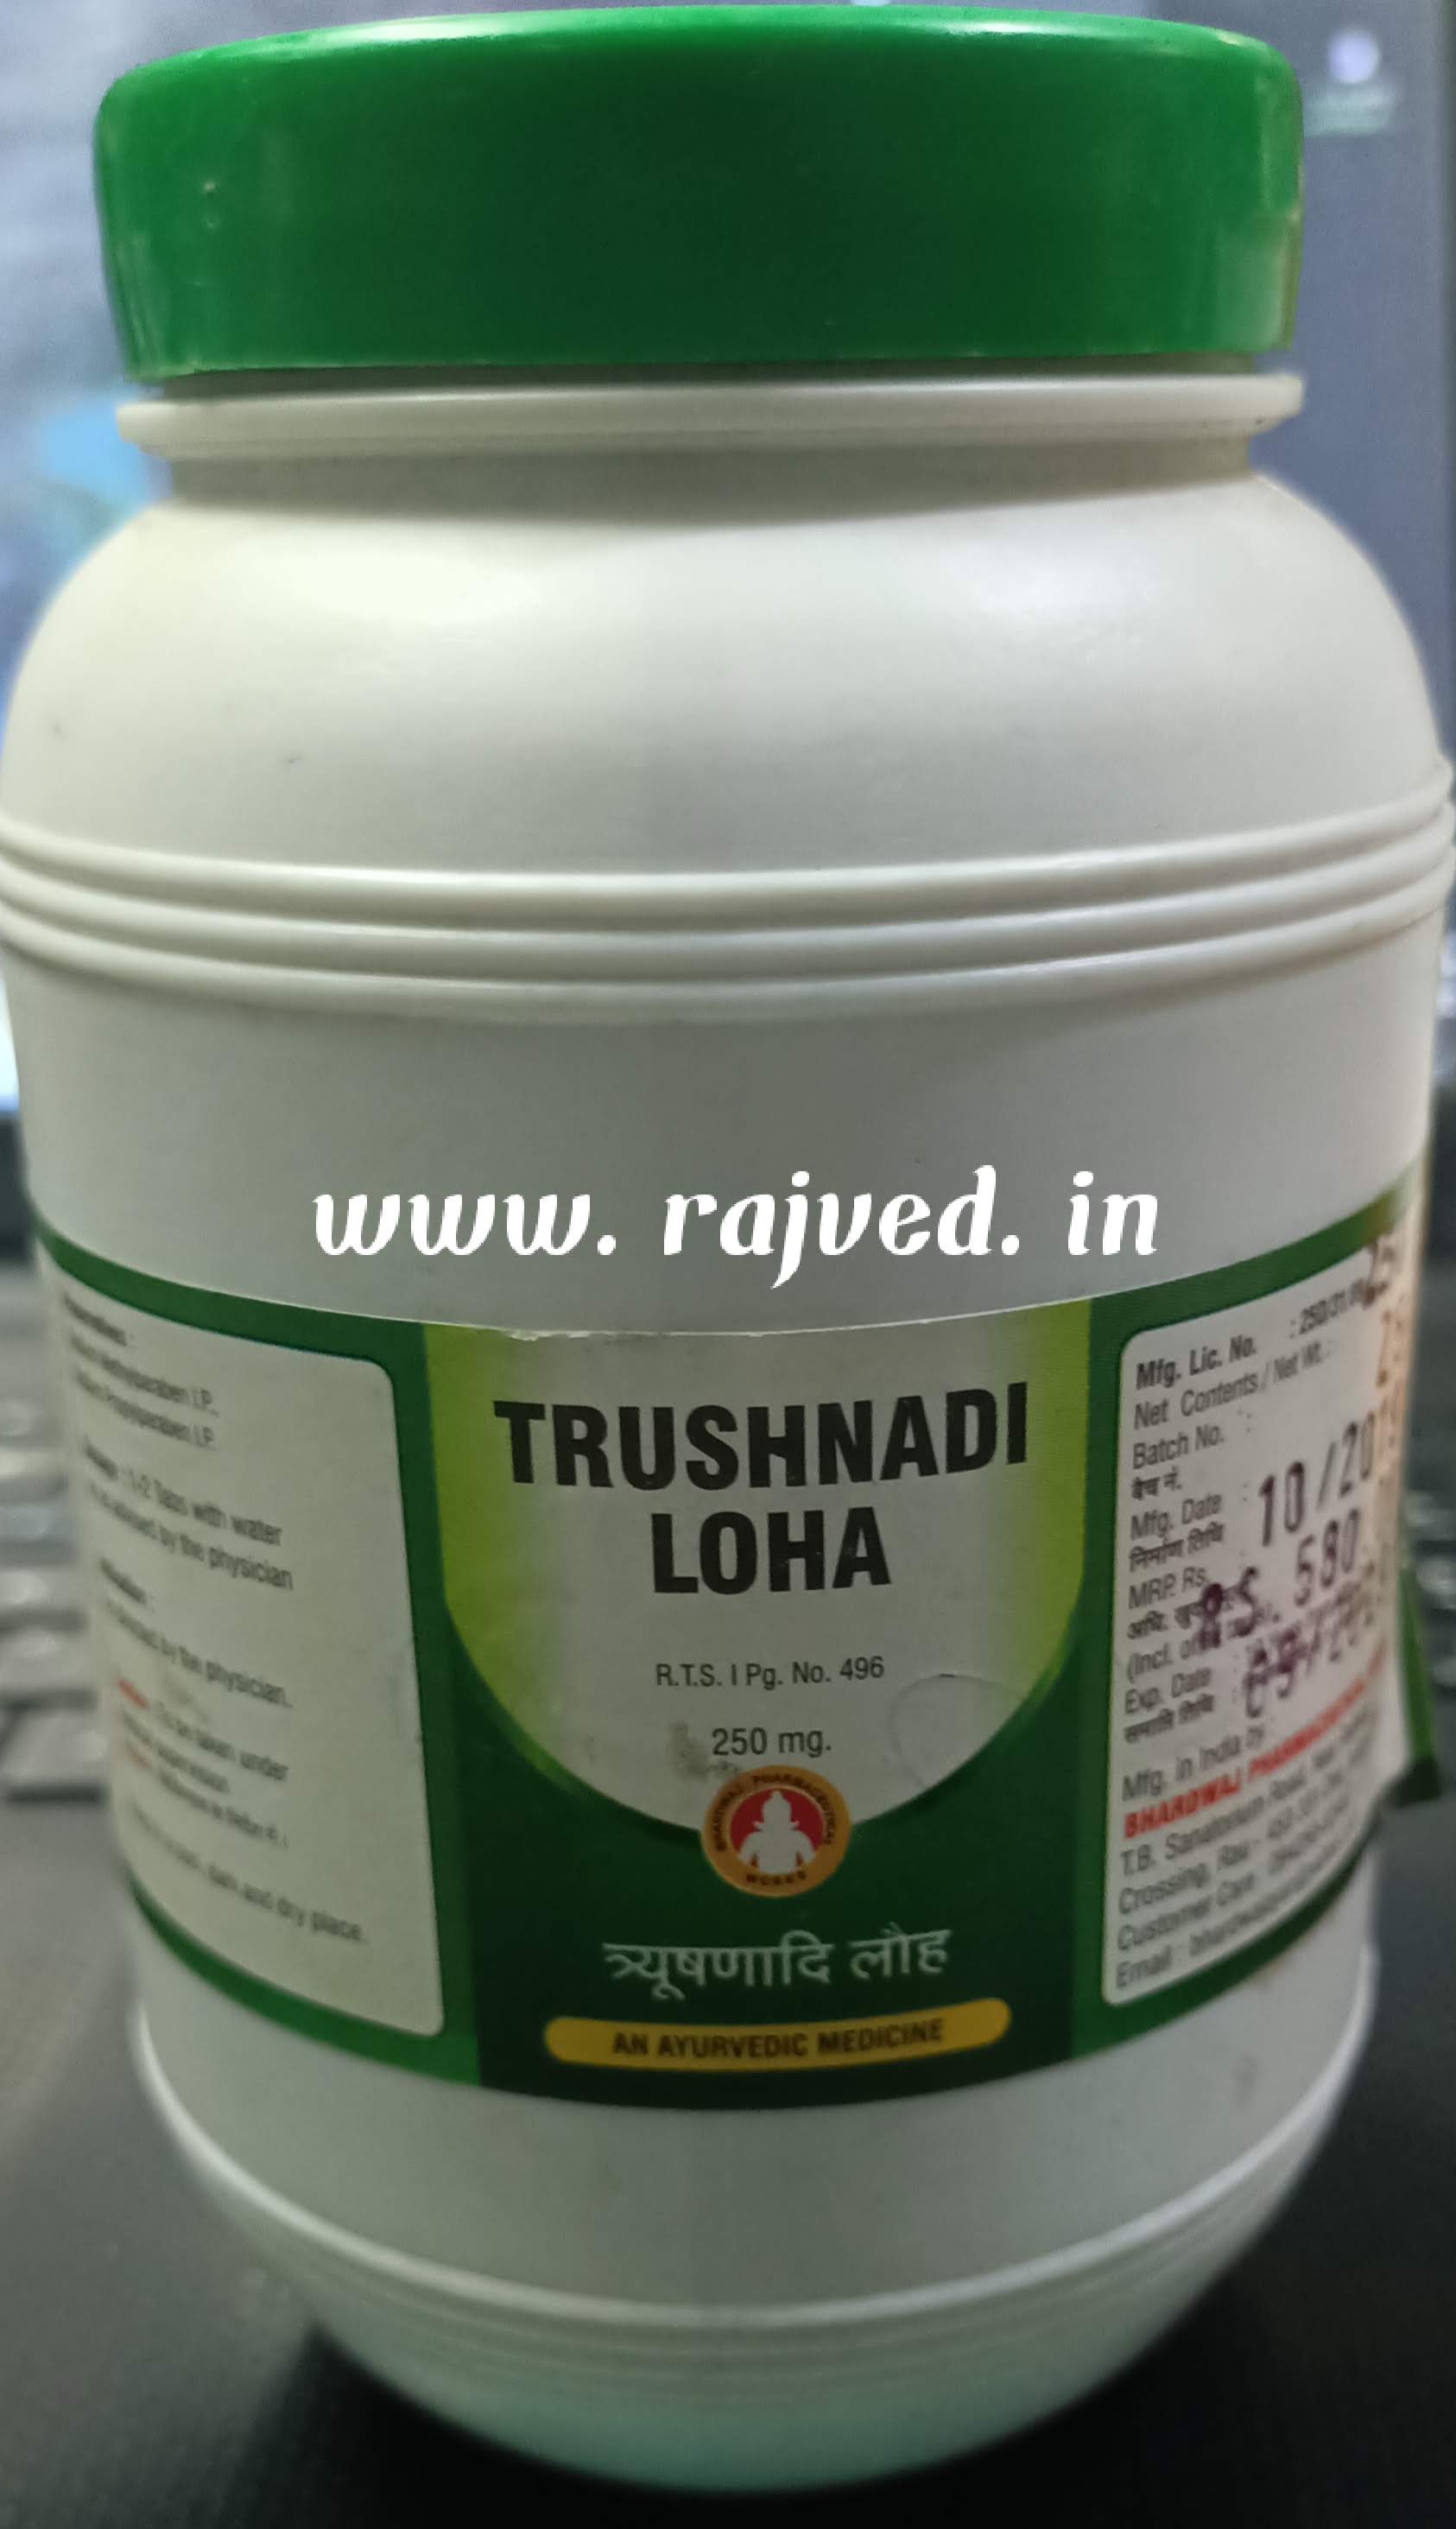 trushnadi loha 60 tablet upto 20% off bhardwaj Pharmaceuticals Indore